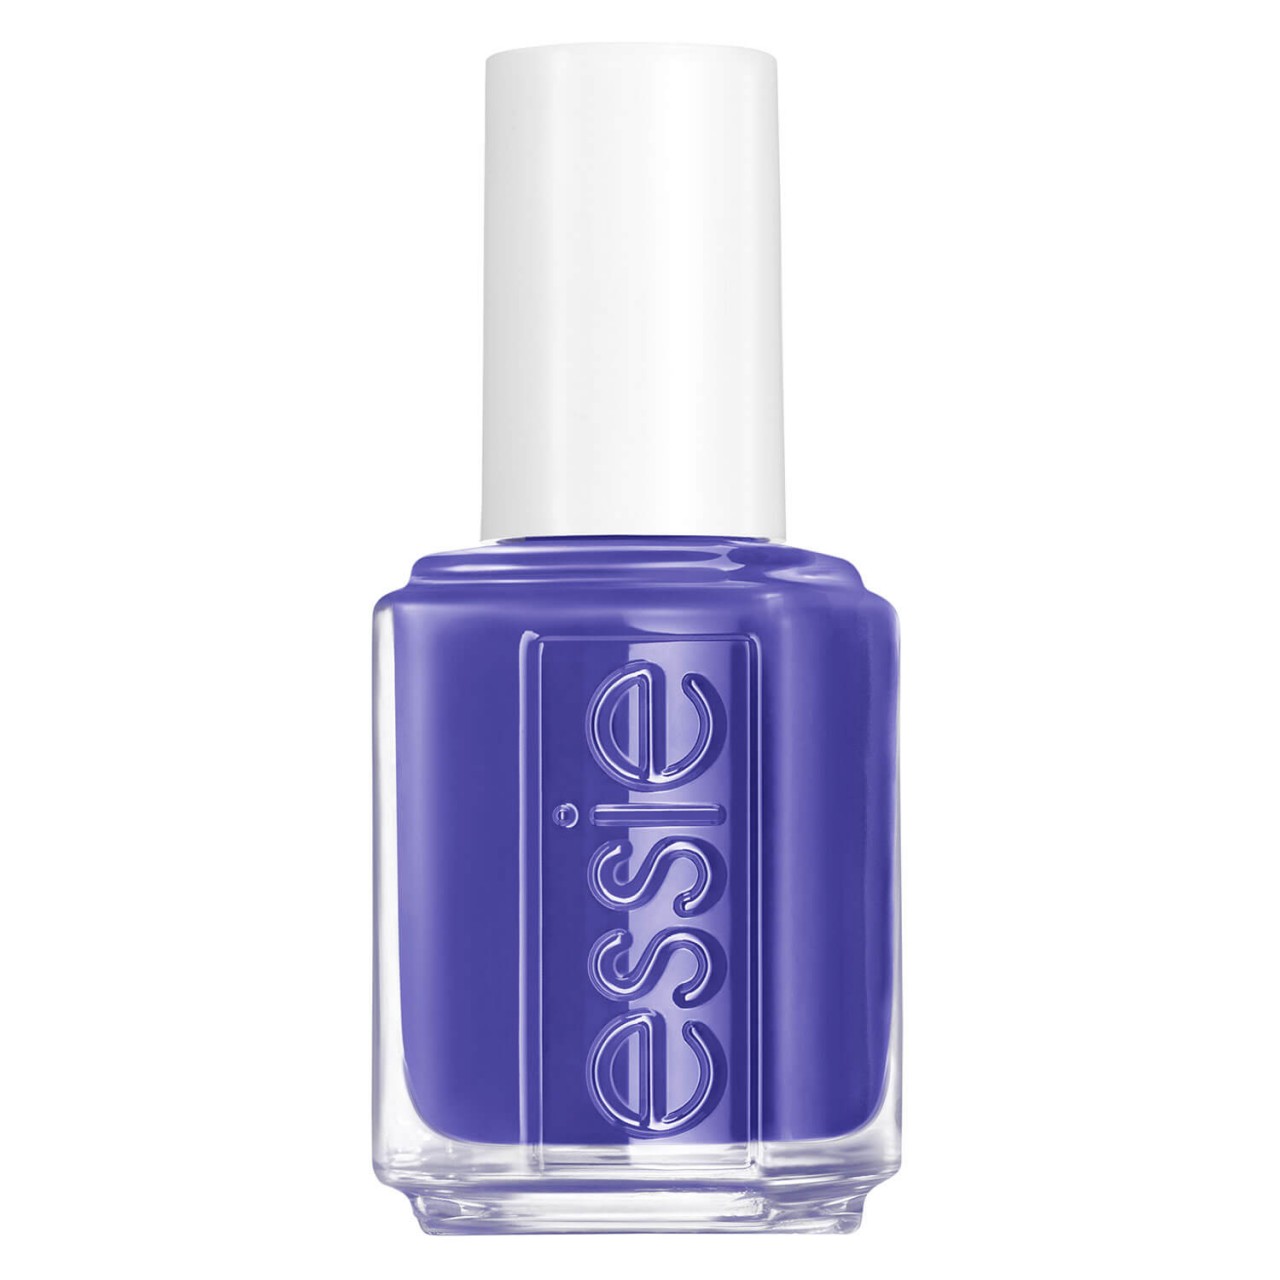 essie nail polish - wink of slepp 752 von essie